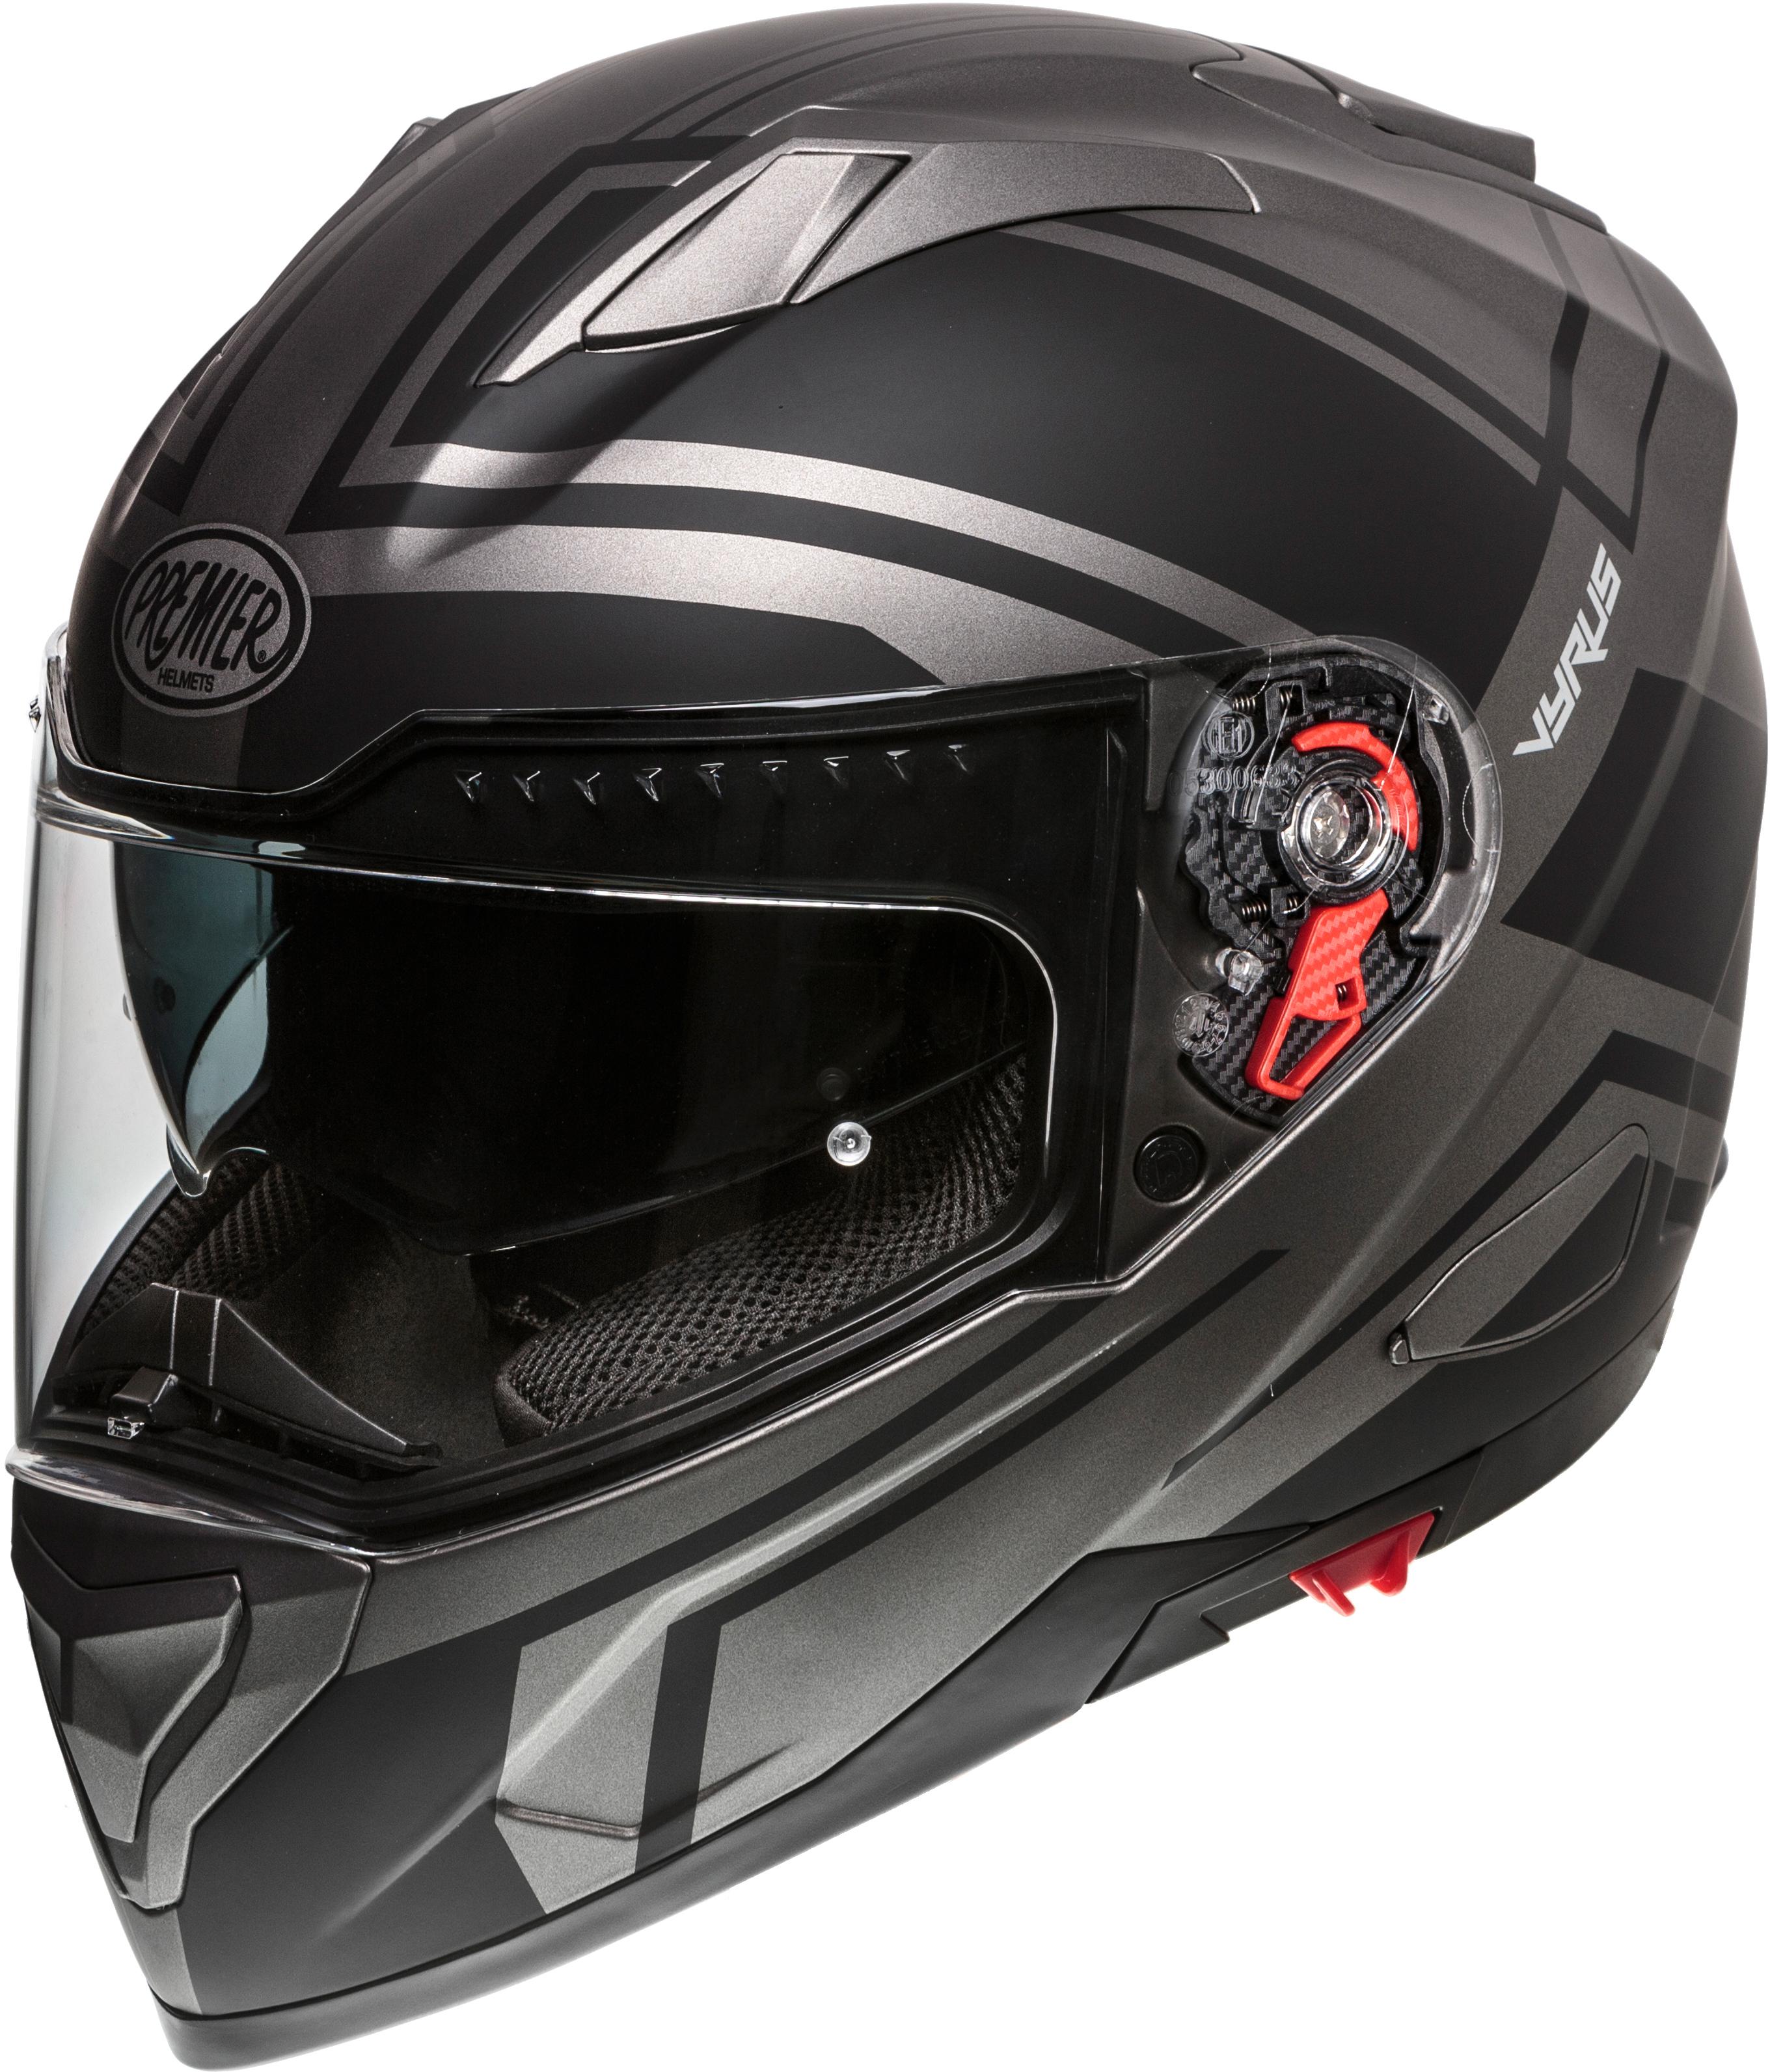 Premier Vyrus Helmet Black/Gun Matt - Medium